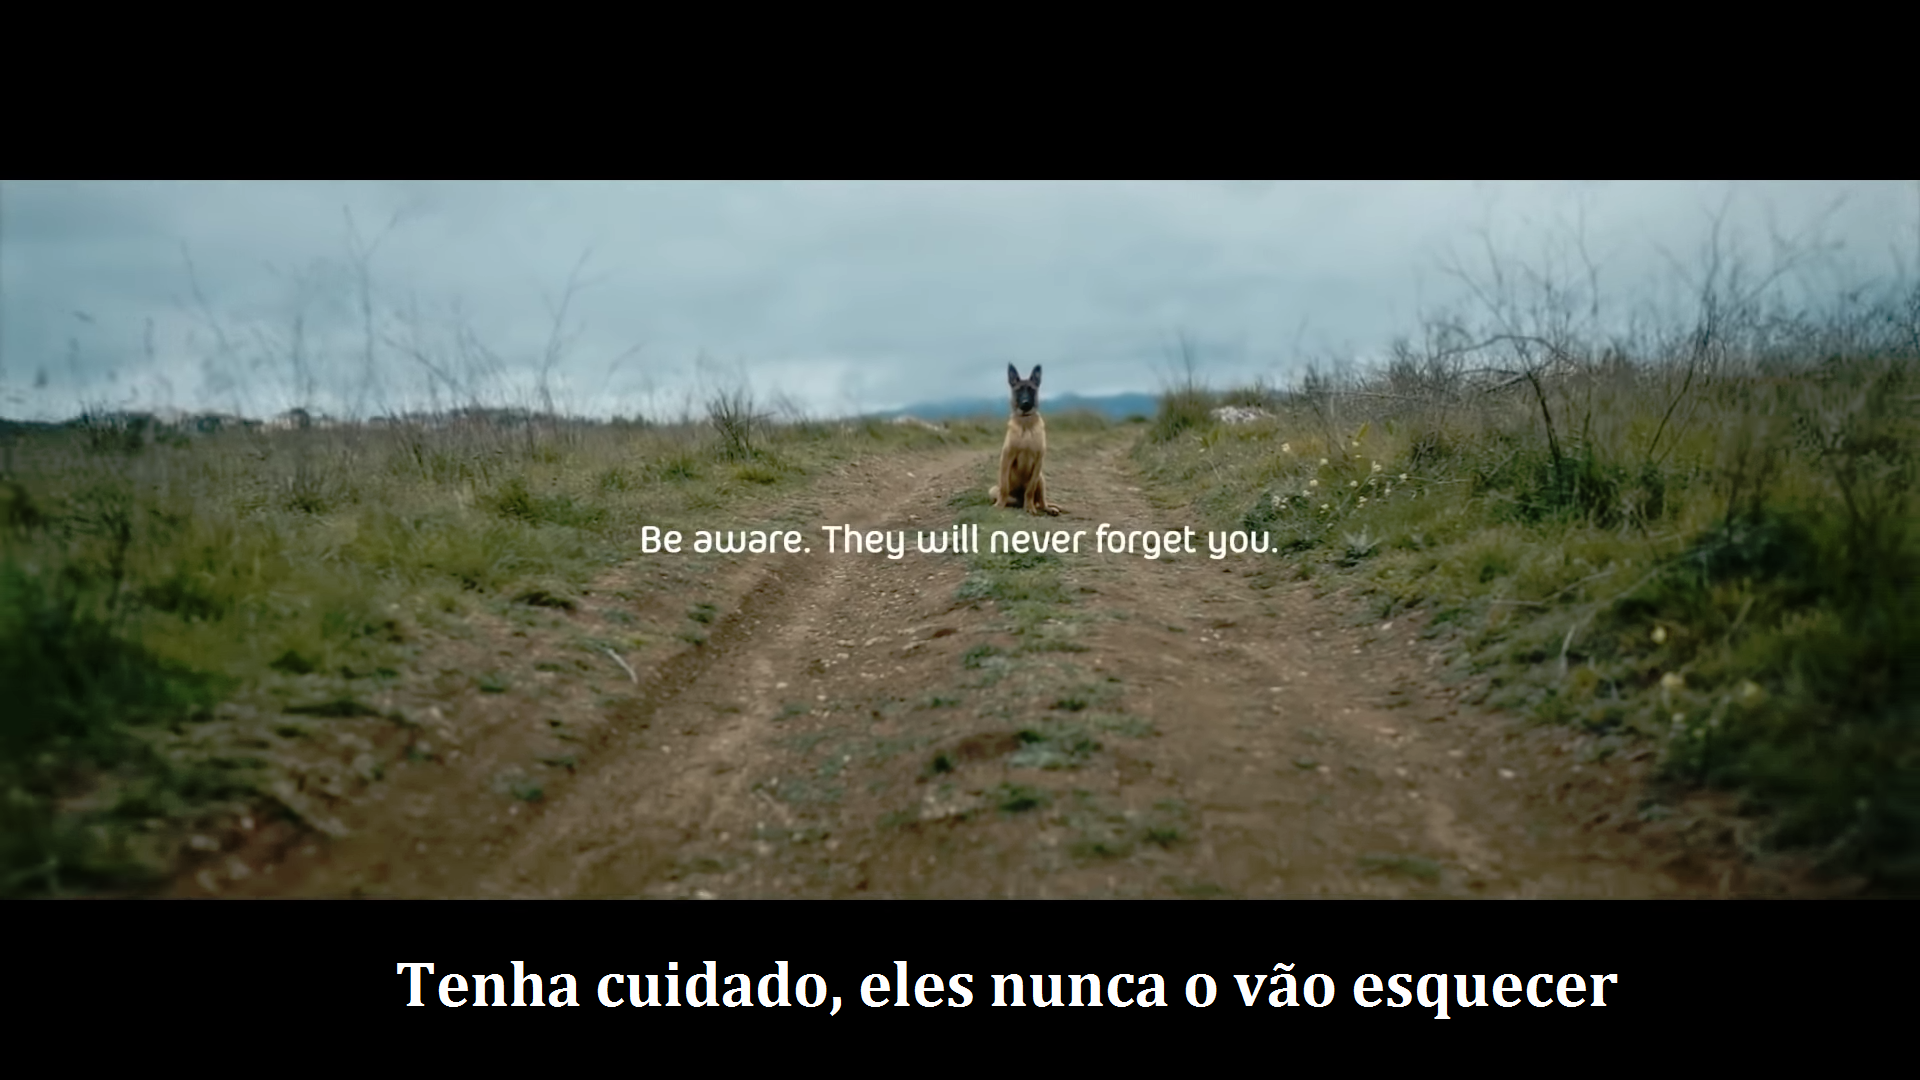 Uma campanha portuguesa que dá orgulho, não abandone o seu cão pois ele nunca o vai esquecer